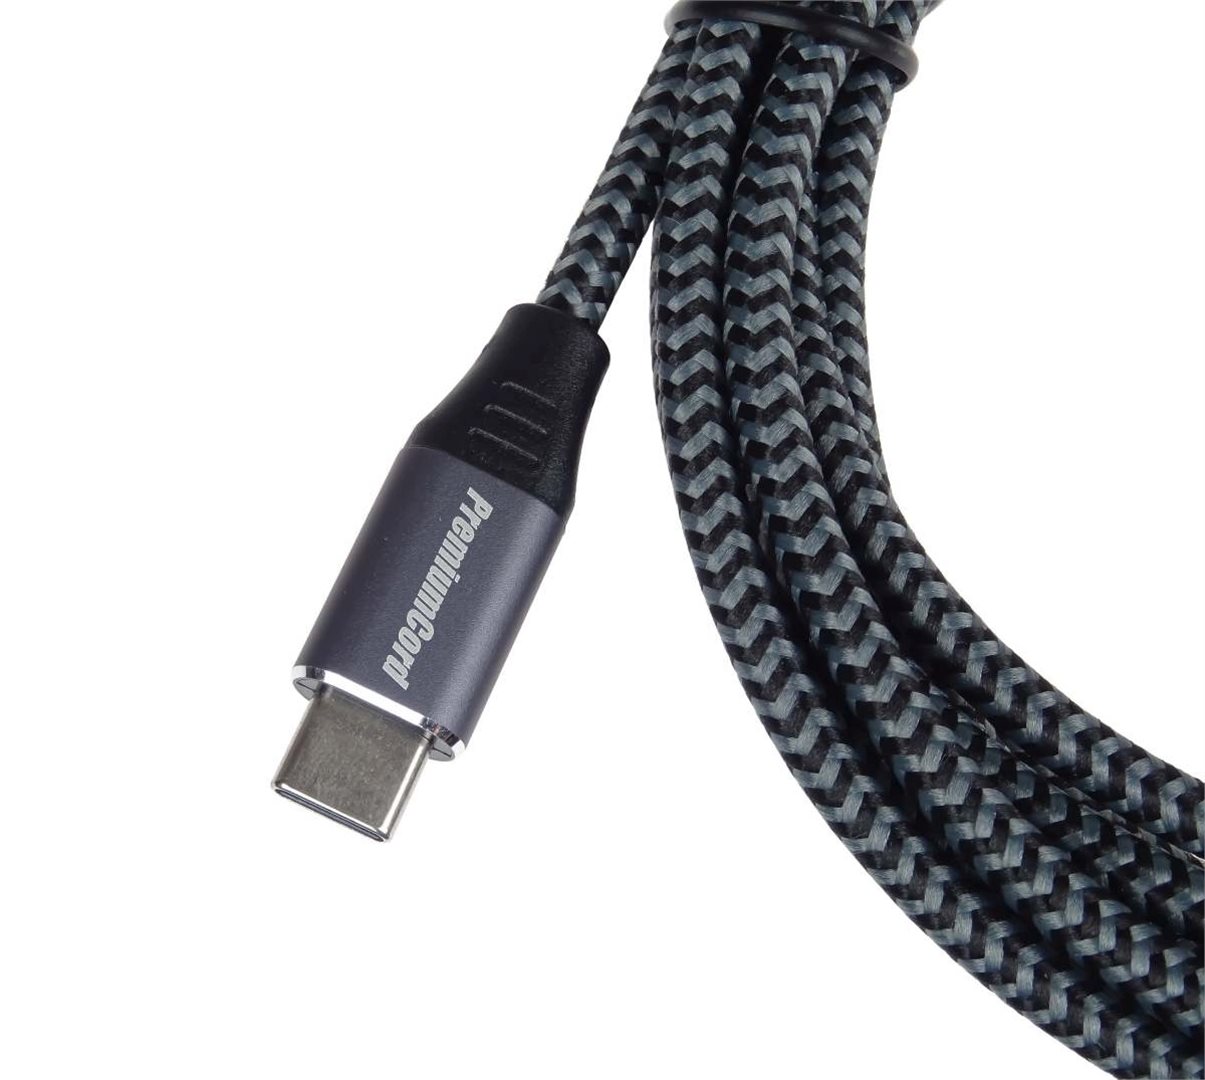 PremiumCord kabel USB-C - USB 3.0 A (USB 3.1 generation 1, 3A, 5Gbit/ s) 3m oplet 